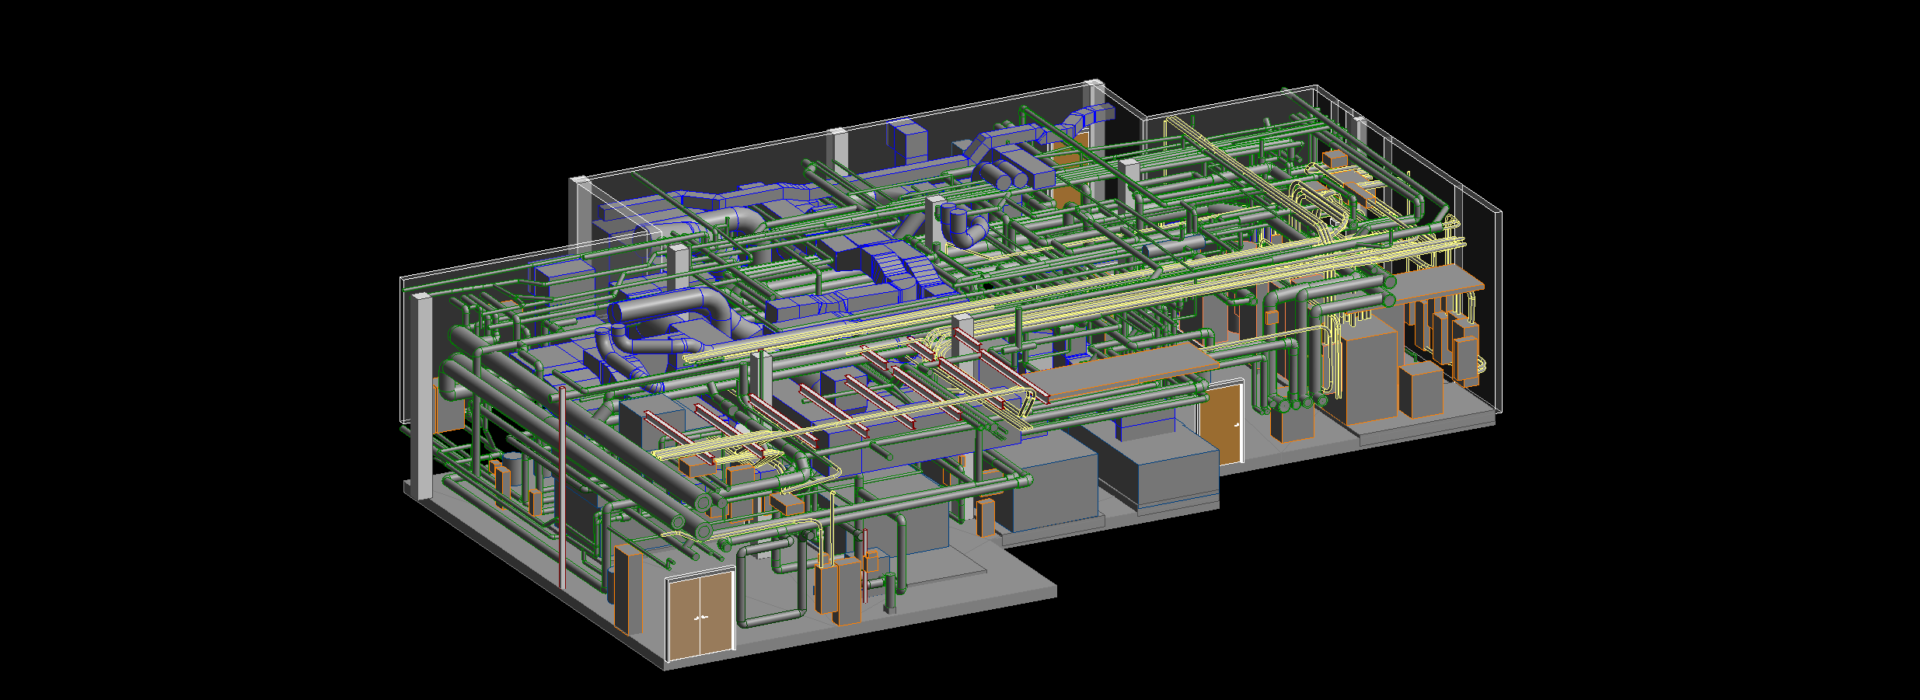 Revit/BIM model of hospital mechanical room